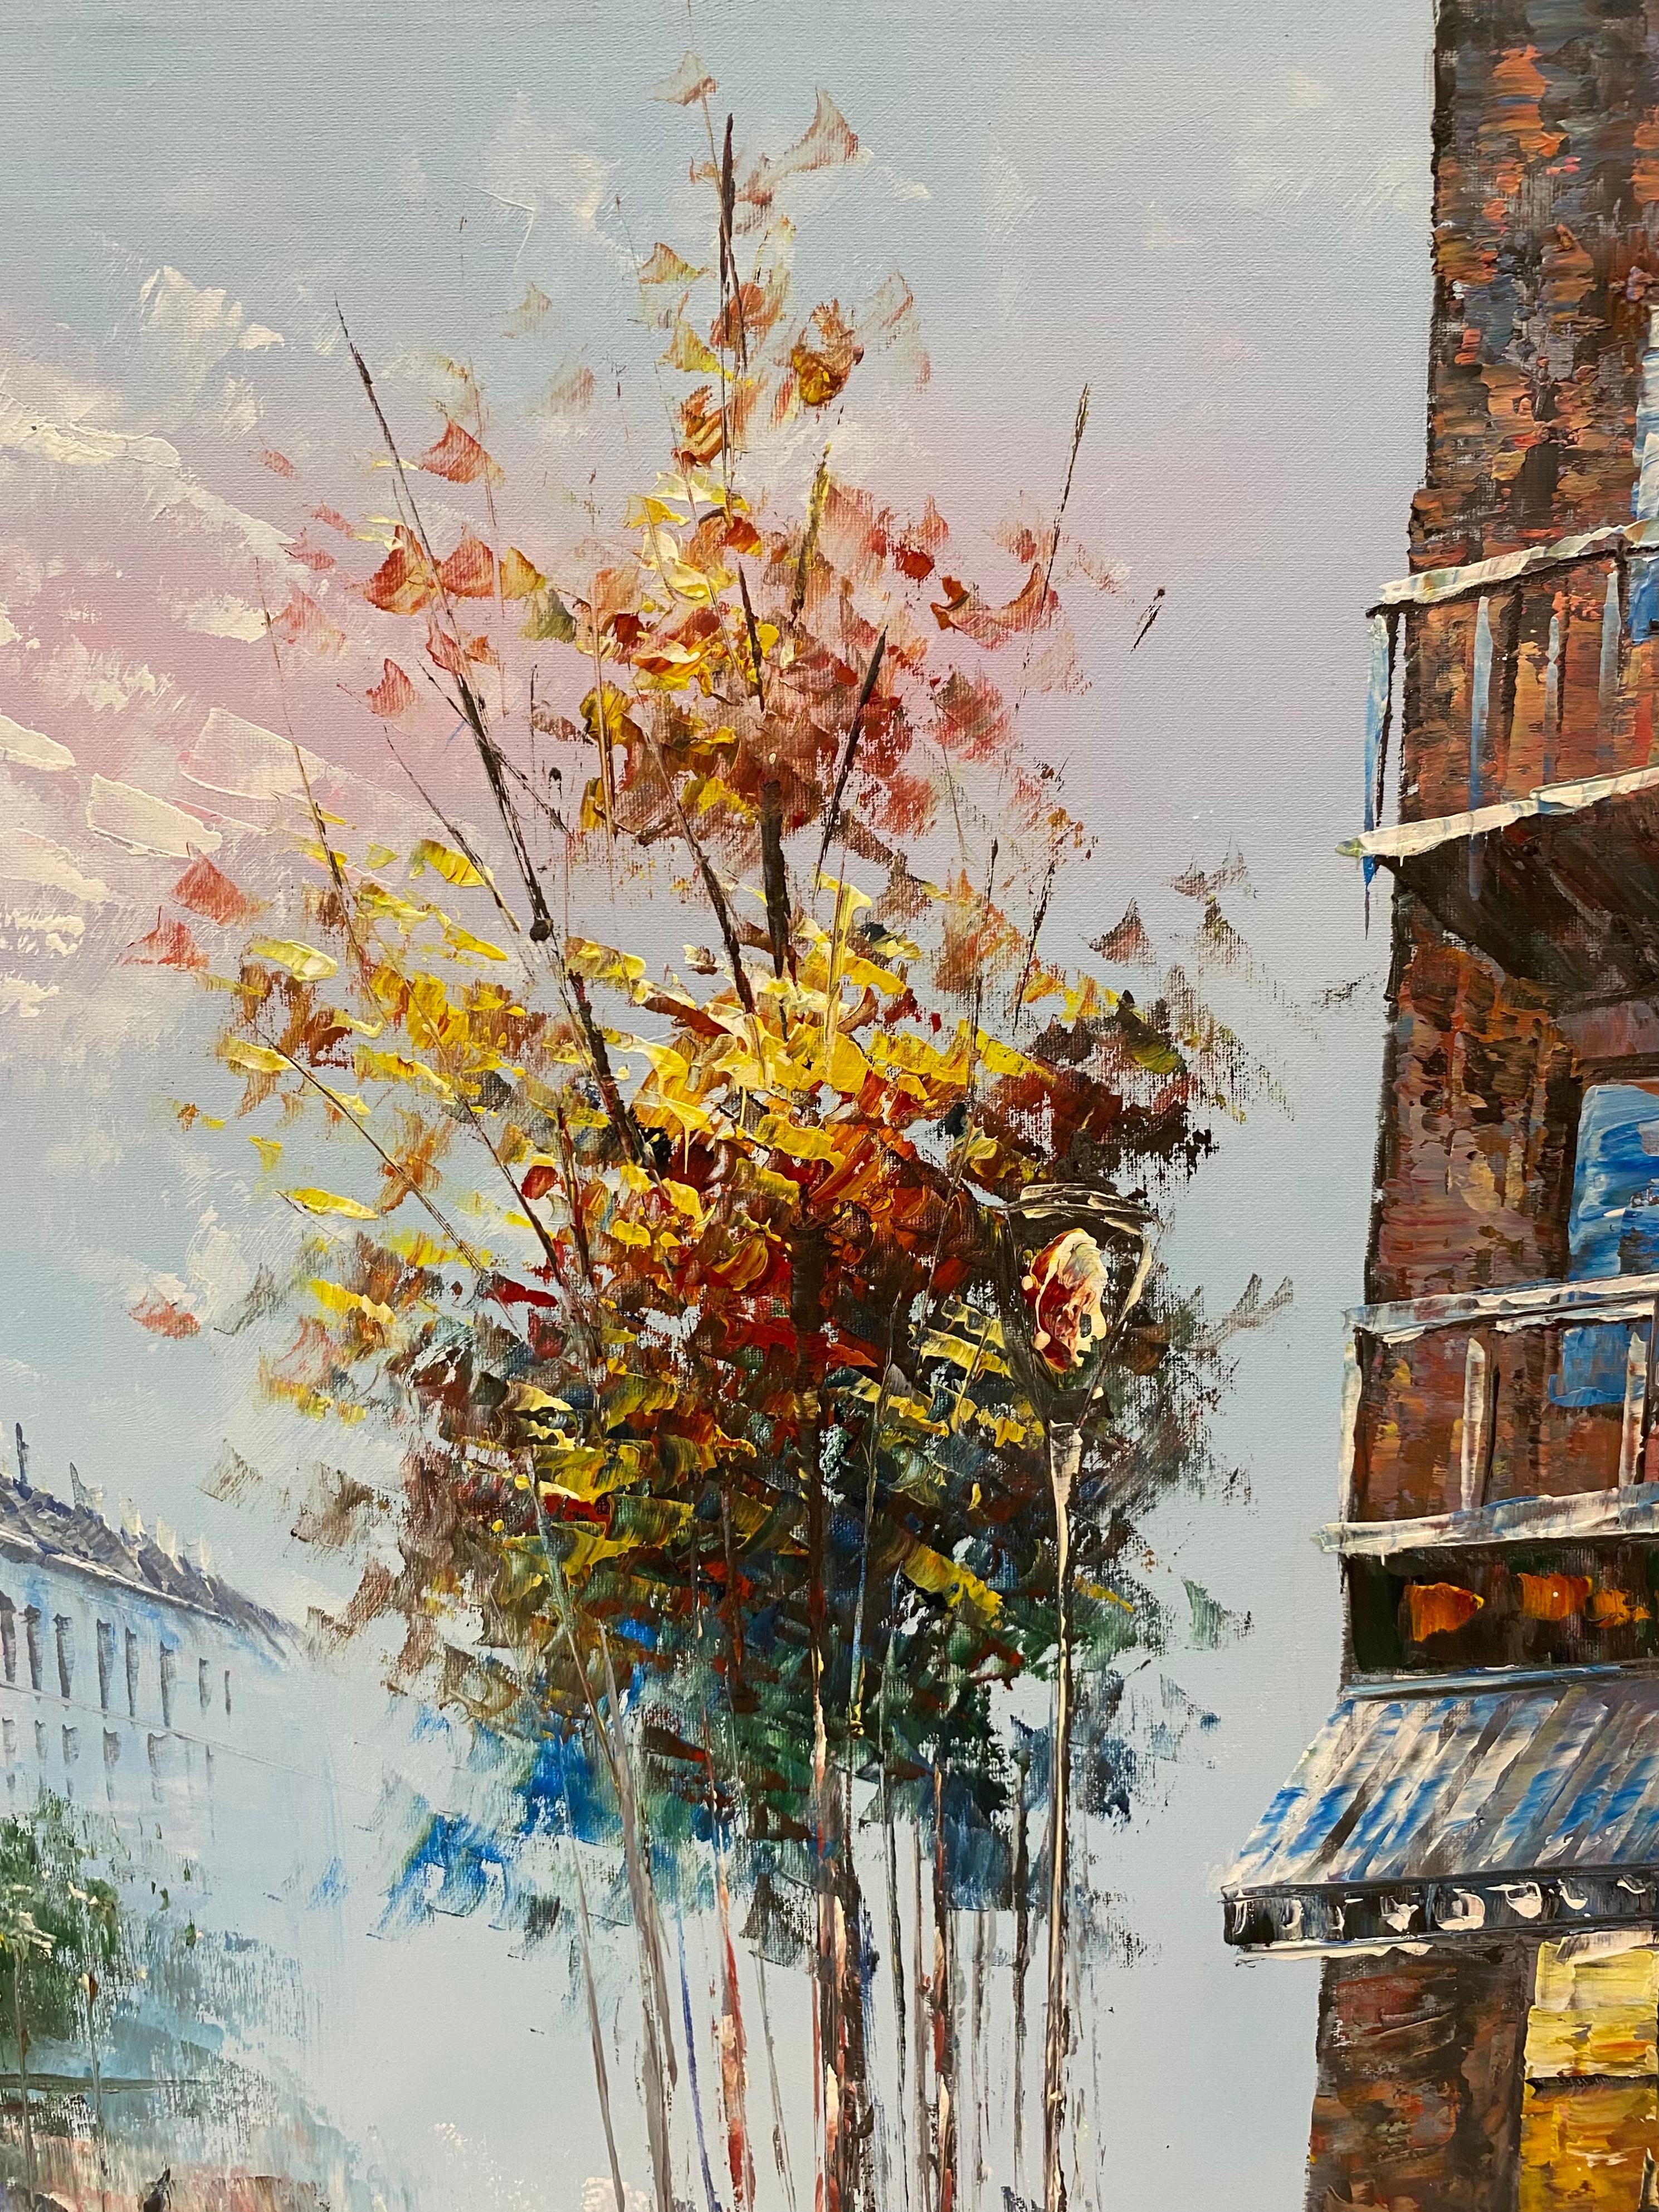 French Paris France Street Scene Oil on Canvas Painting Signed Burnett